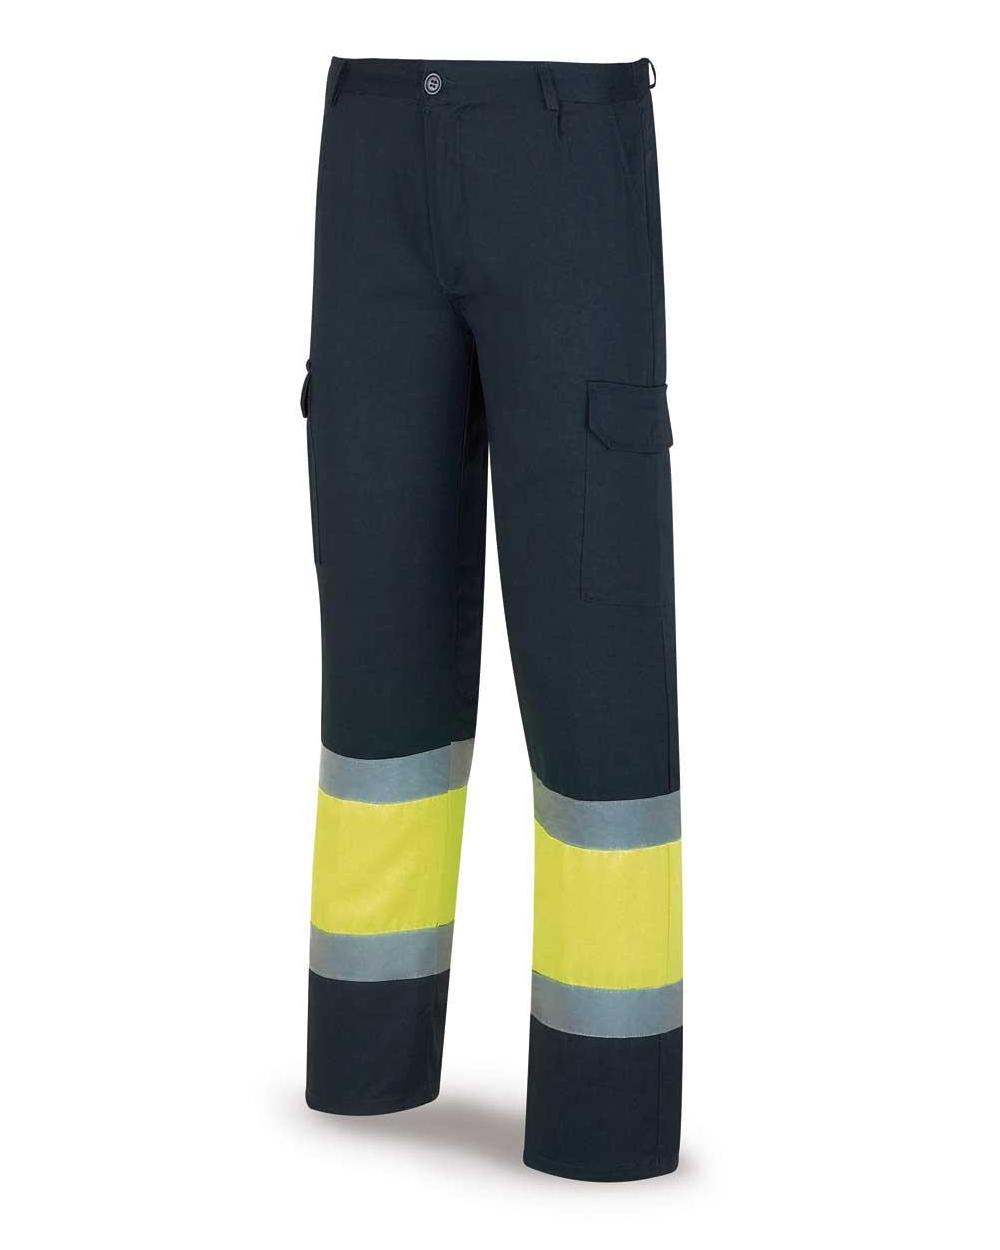 Comprar Pantalón Alta Visibilidad Amarillo Azul 388-Pfy/A barato